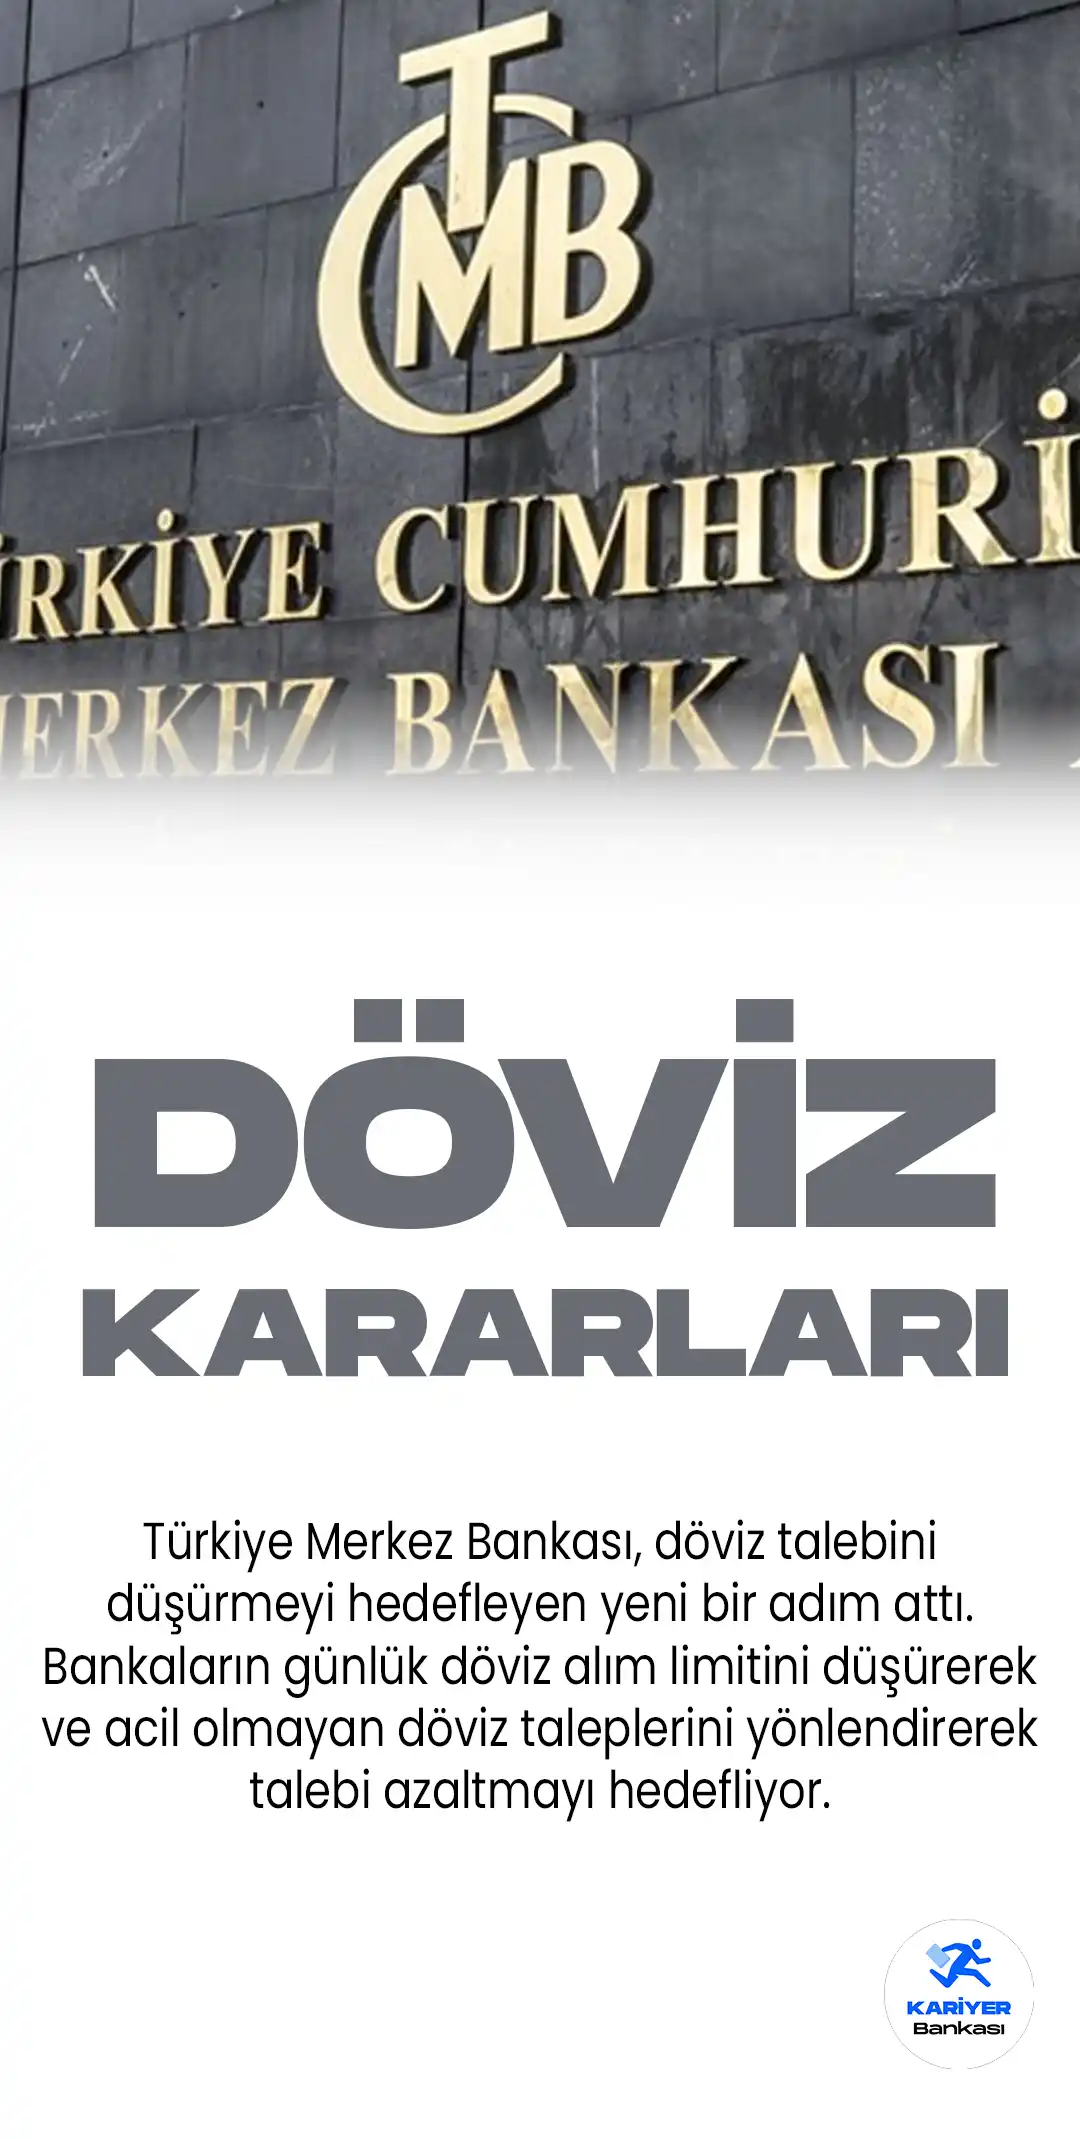 Türkiye Merkez Bankası, döviz talebini düşürmeyi hedefleyen yeni bir adım attı. Bankaların günlük döviz alım limitini düşürerek ve acil olmayan döviz taleplerini yönlendirerek talebi azaltmayı hedefliyor.